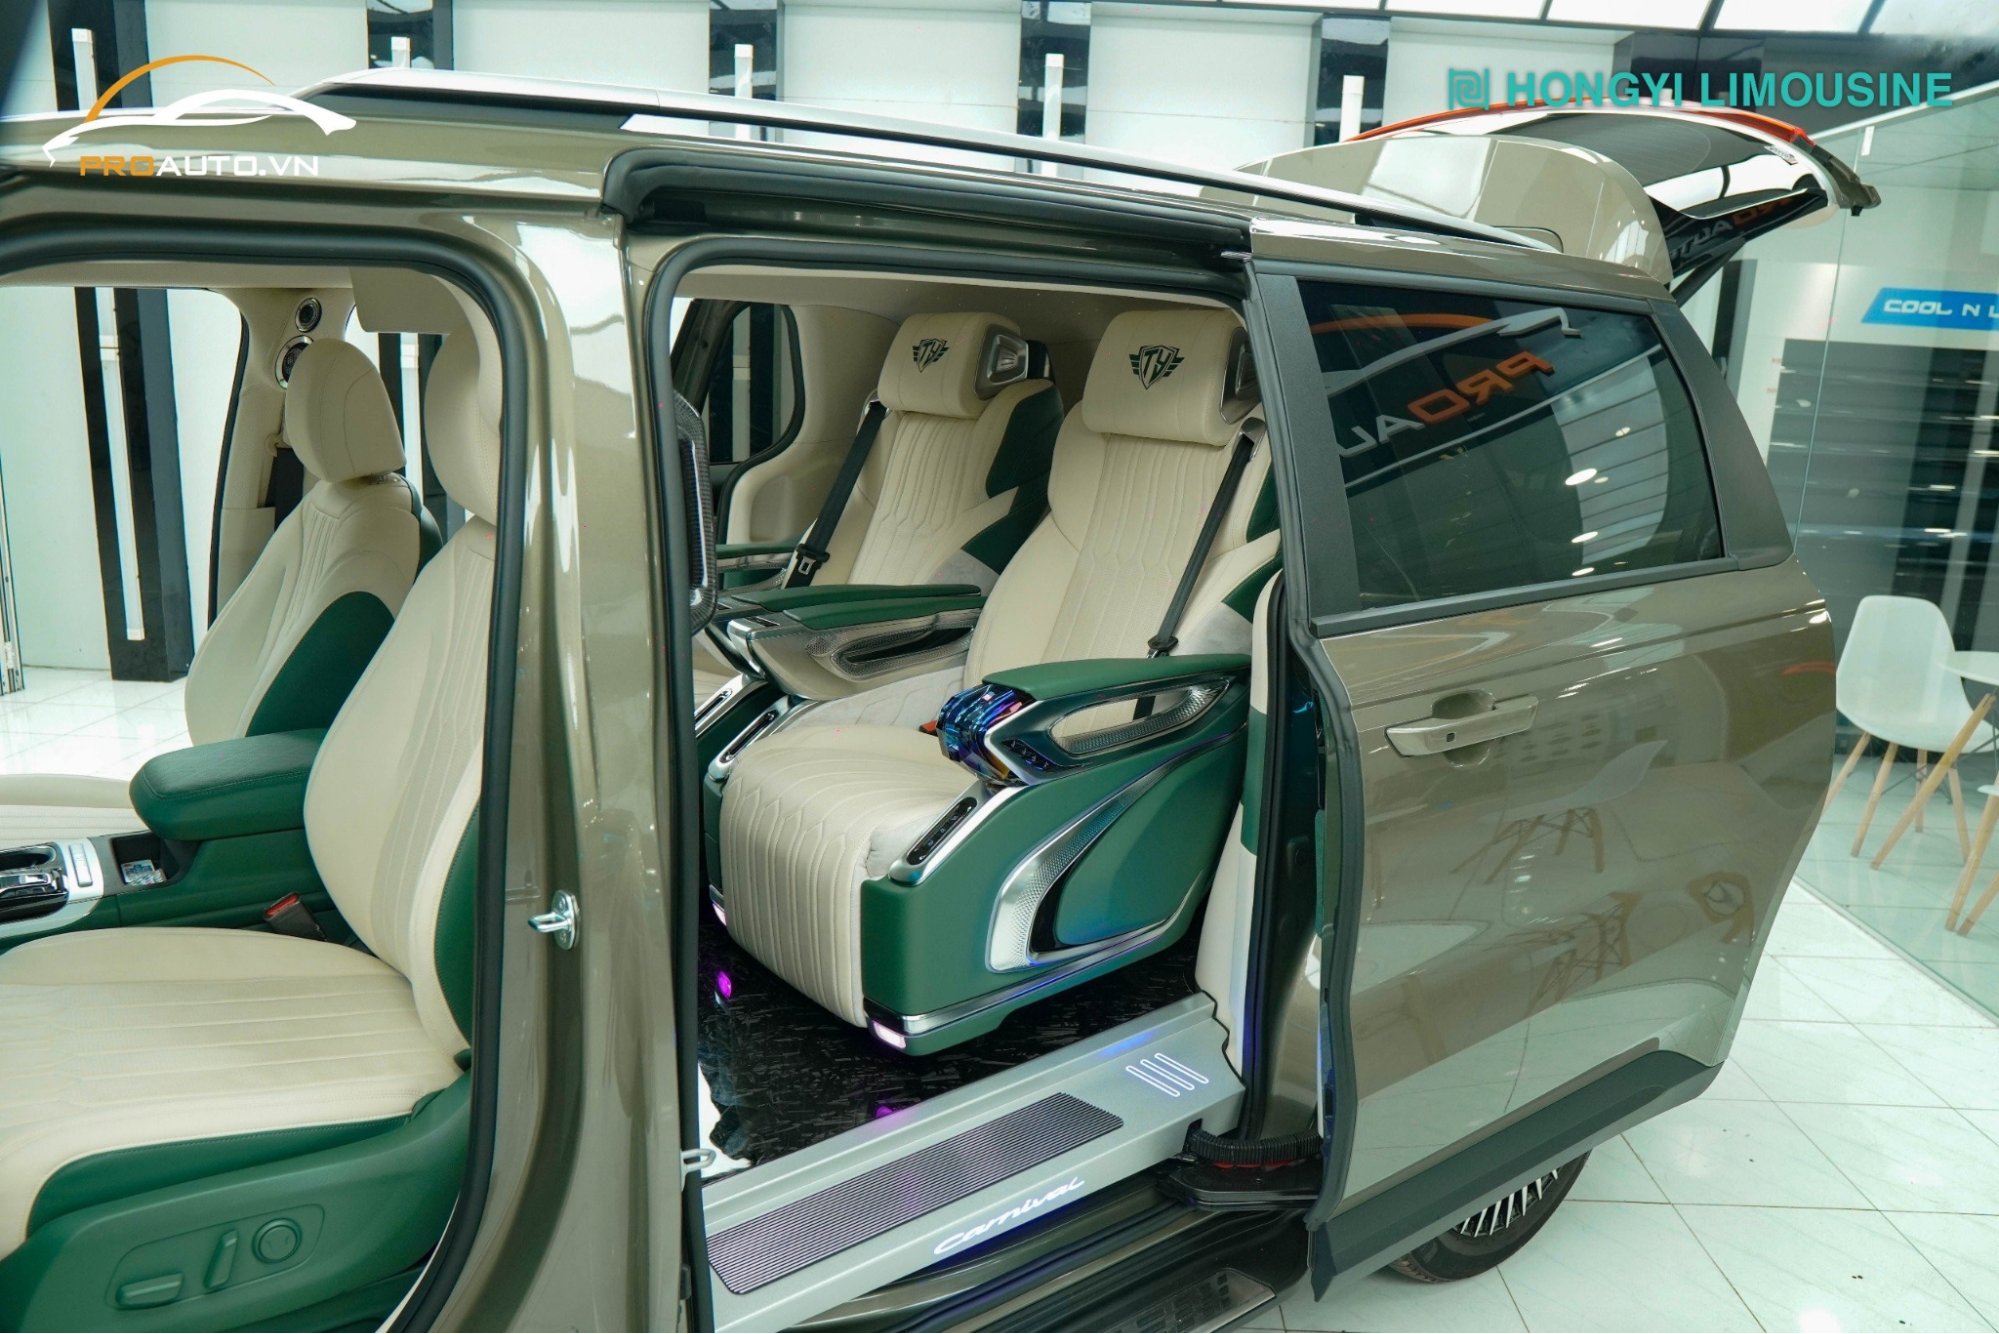 Màu xanh mint với bộ ghế Hongyi Limousine 4.0